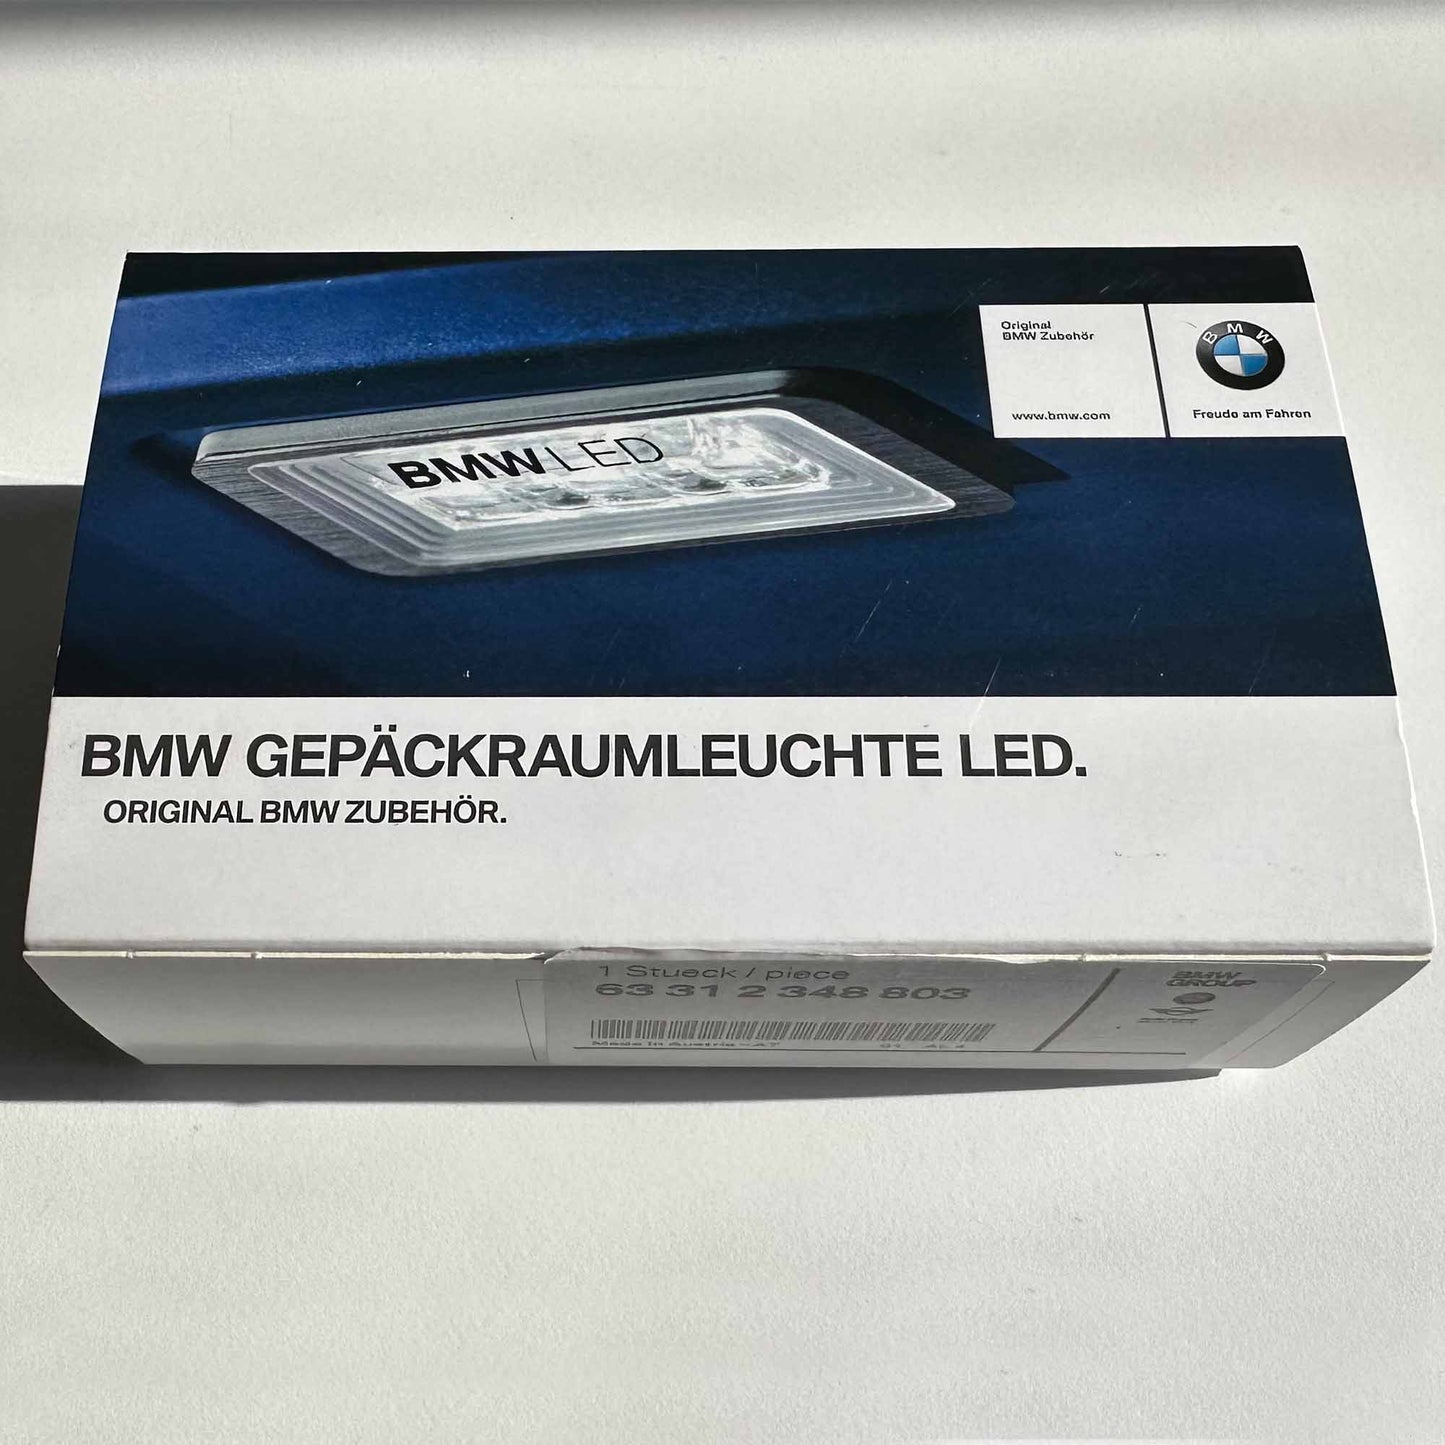 BMW Gepäckraumleuchte LED